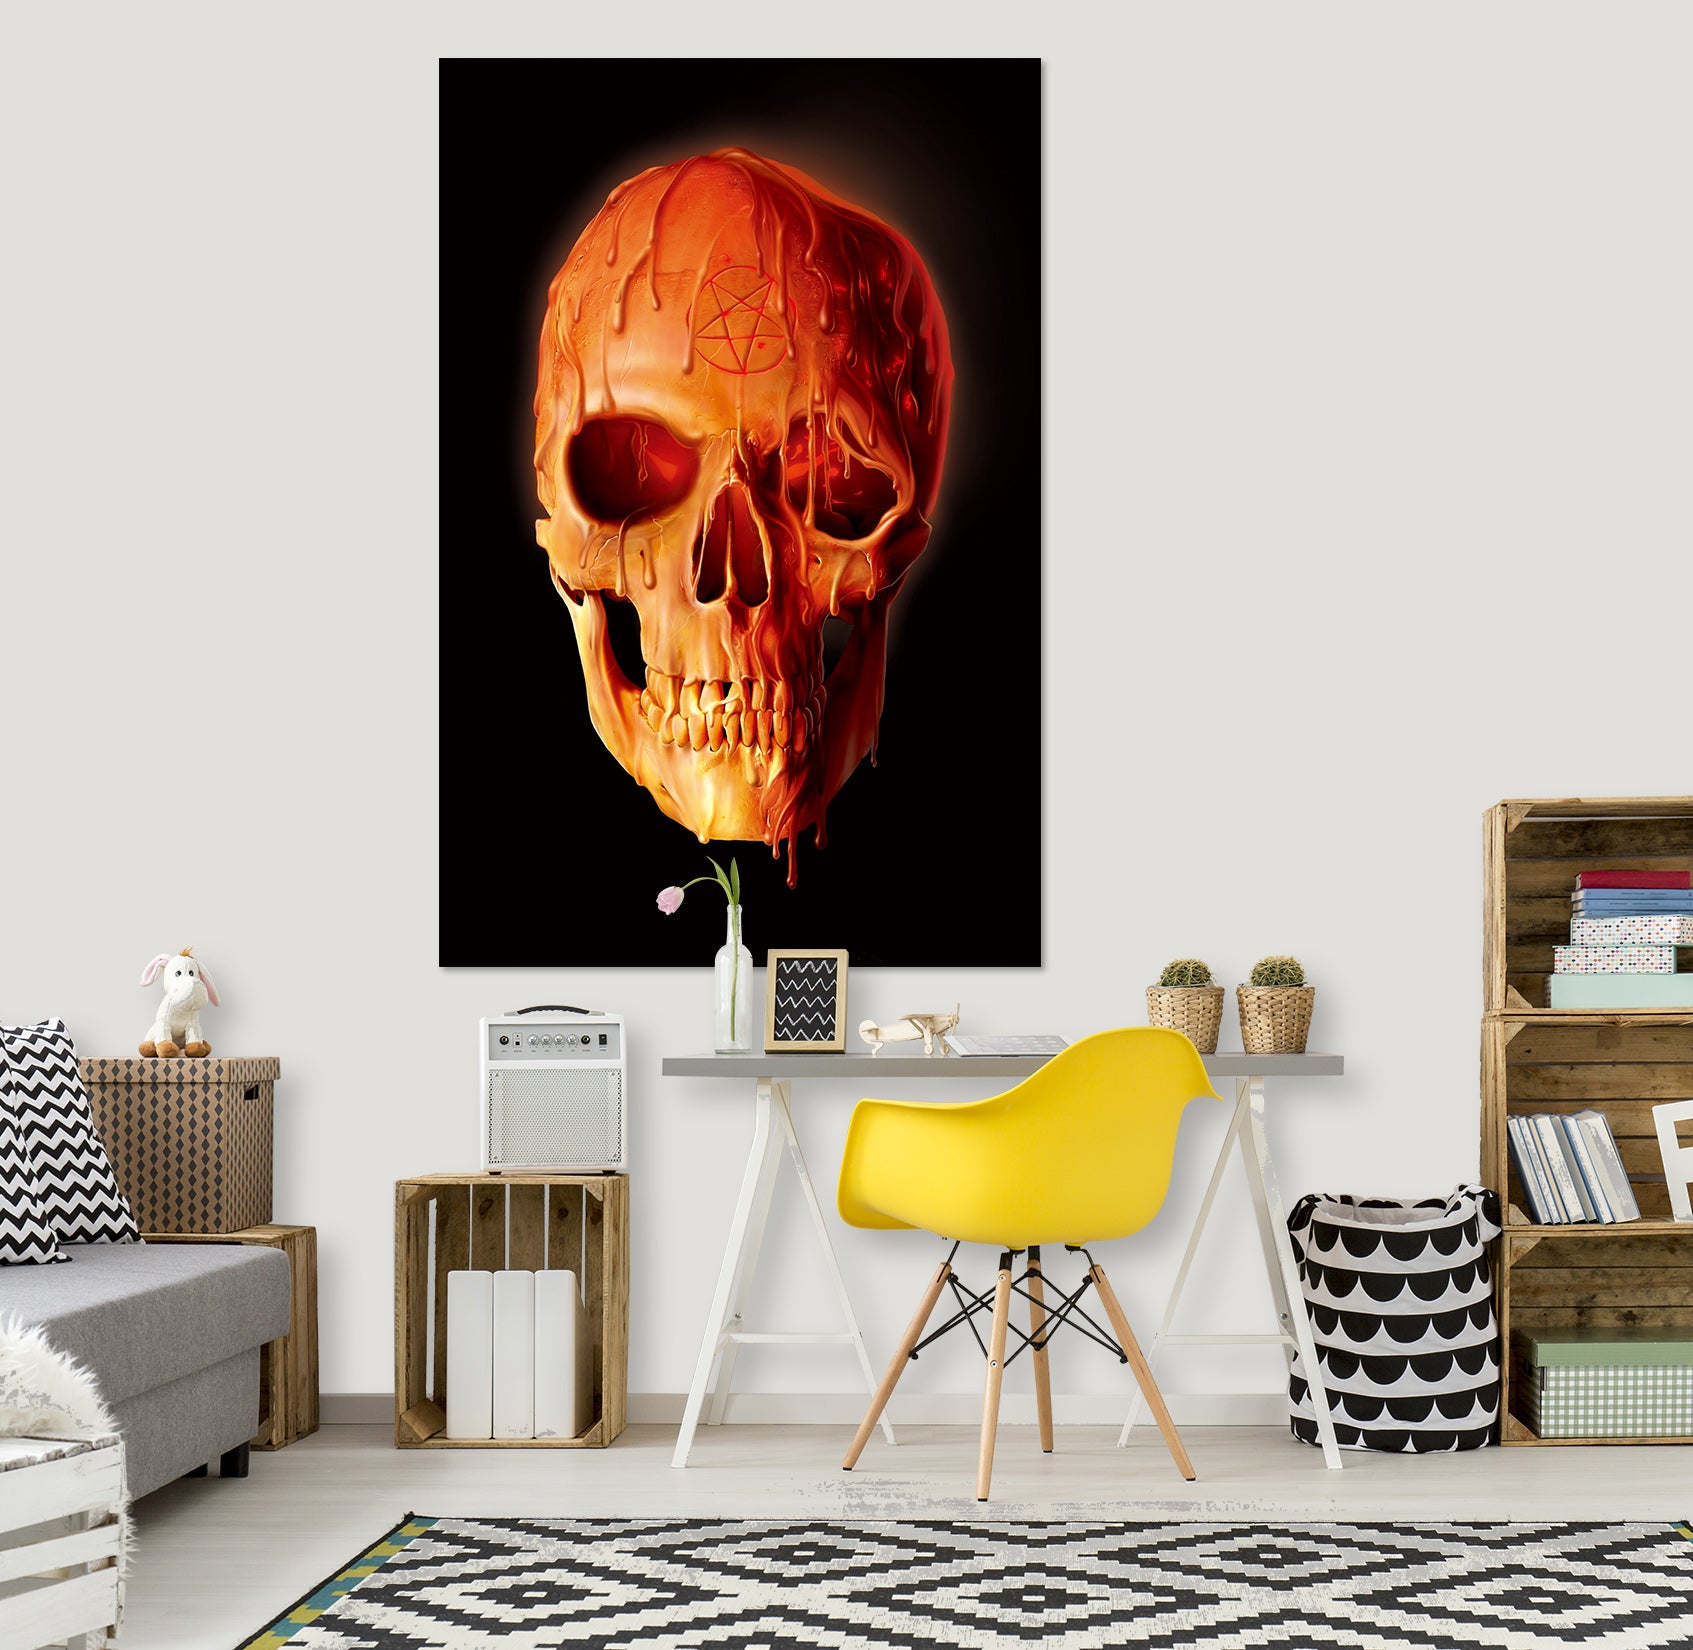 3D Wax Skull 091 Vincent Hie Wall Sticker